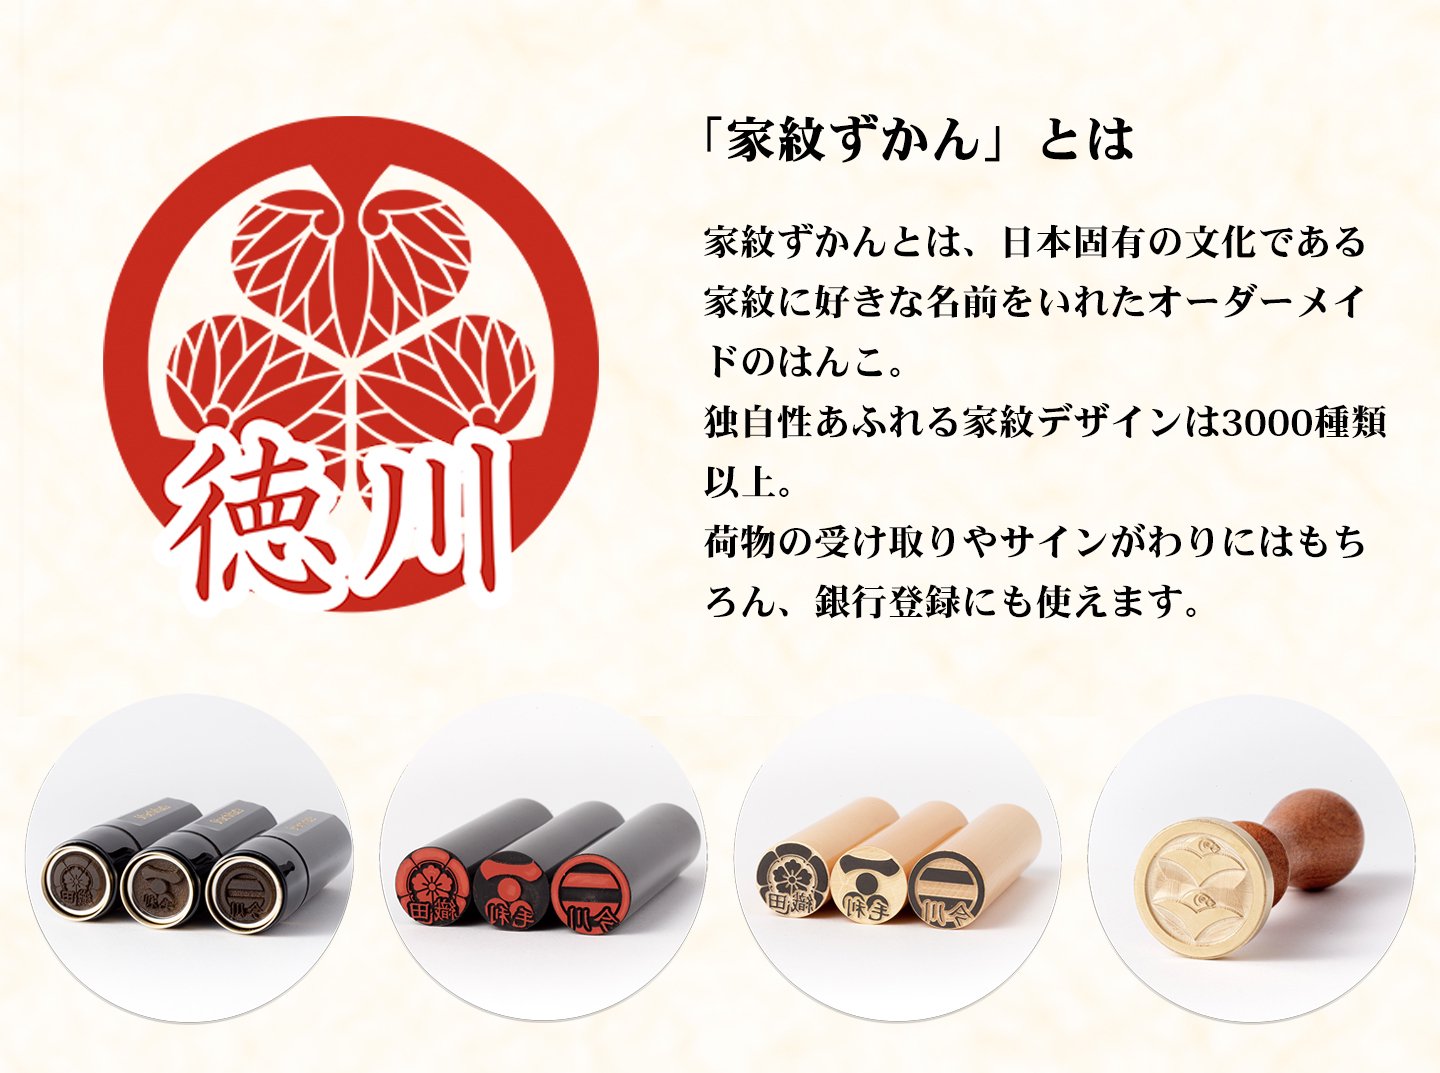 家紋ずかんとは、日本固有の文化である家紋に好きな名前をいれたオーダーメイドのはんこ。独自性あふれる家紋デザインは2000種類以上。荷物の受け取りやサインがわりにはもちろん、銀行登録にも使えます。